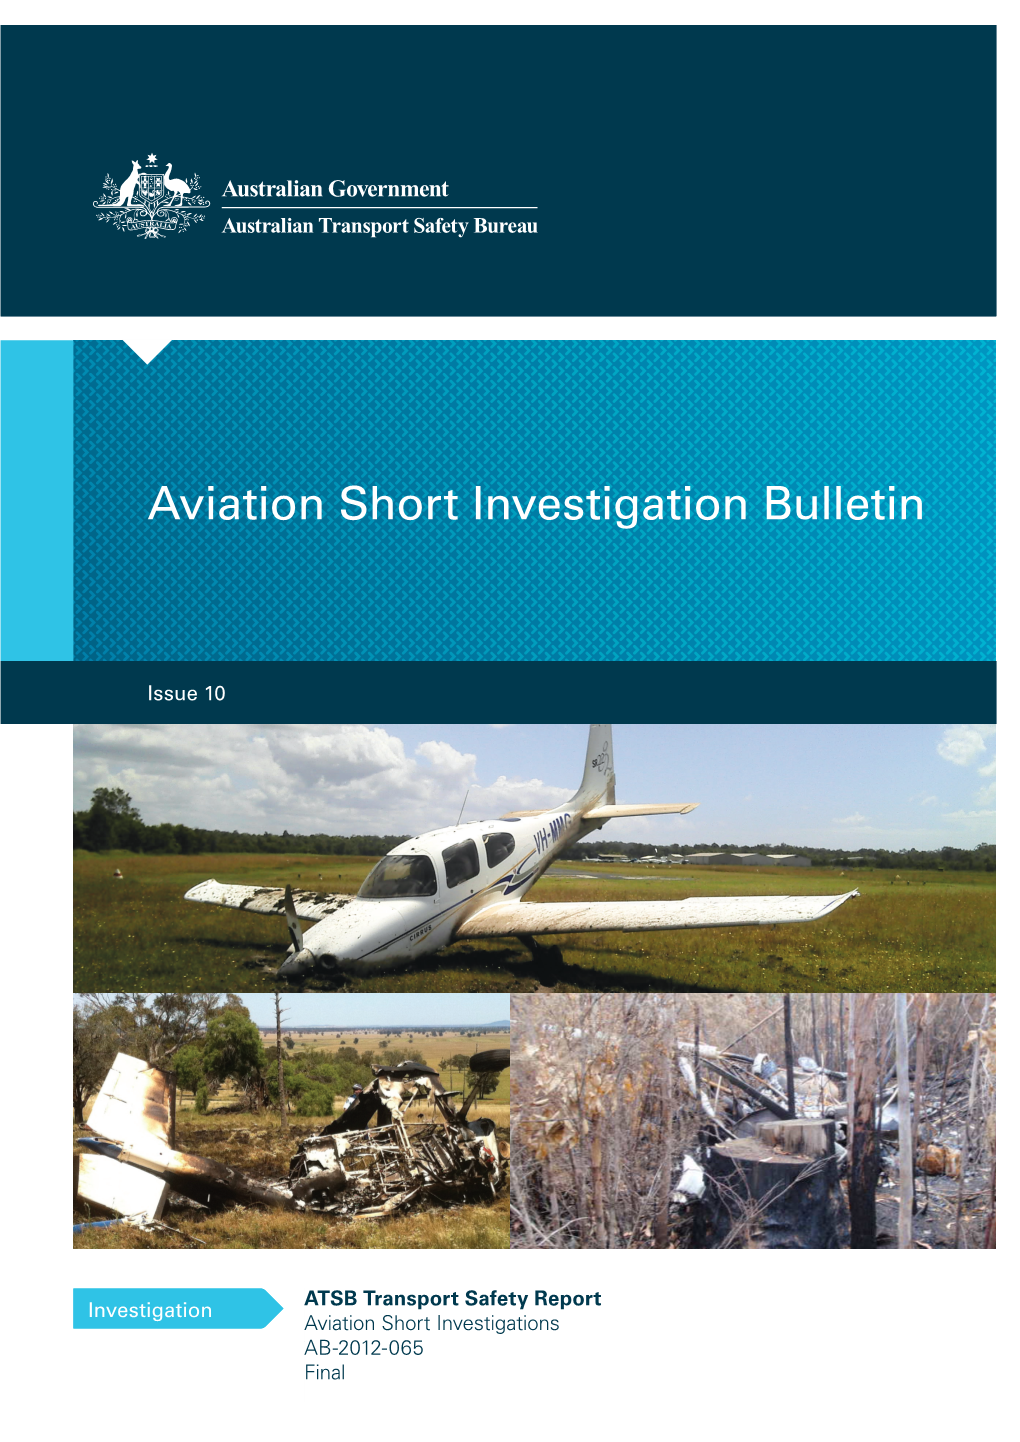 AB-2012-065 Aviation Short Investigation Bulletin Issue 10